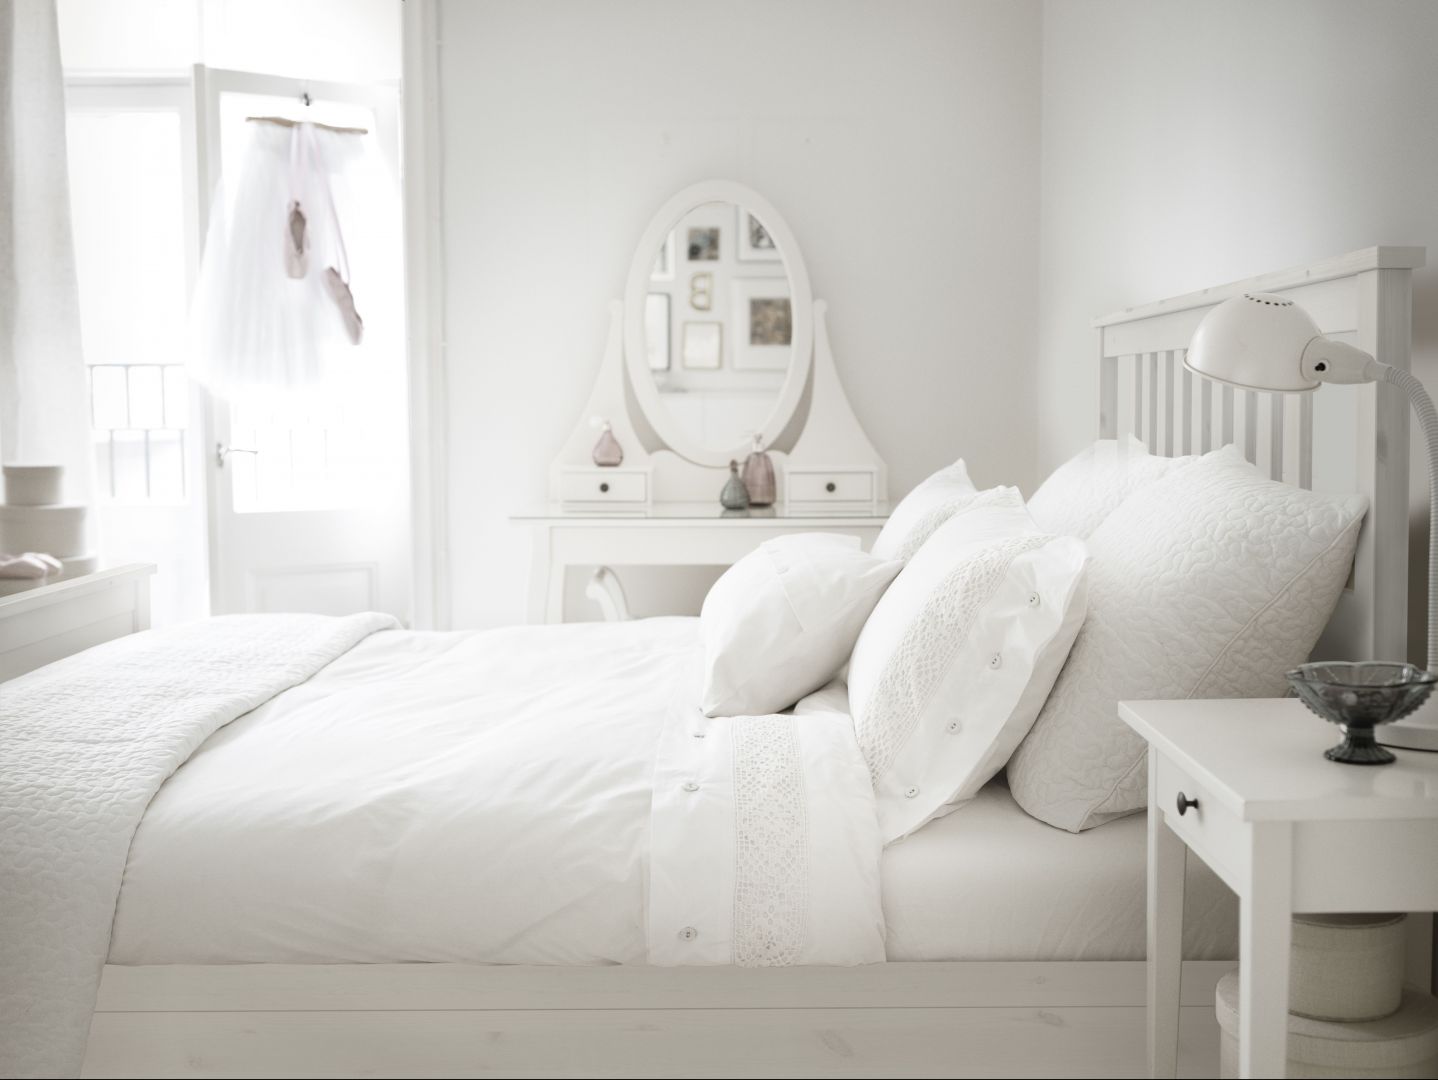 Białe łóżko w stylu skandynawskim. Sypialnia Hemnes marki IKEA
Fot. IKEA